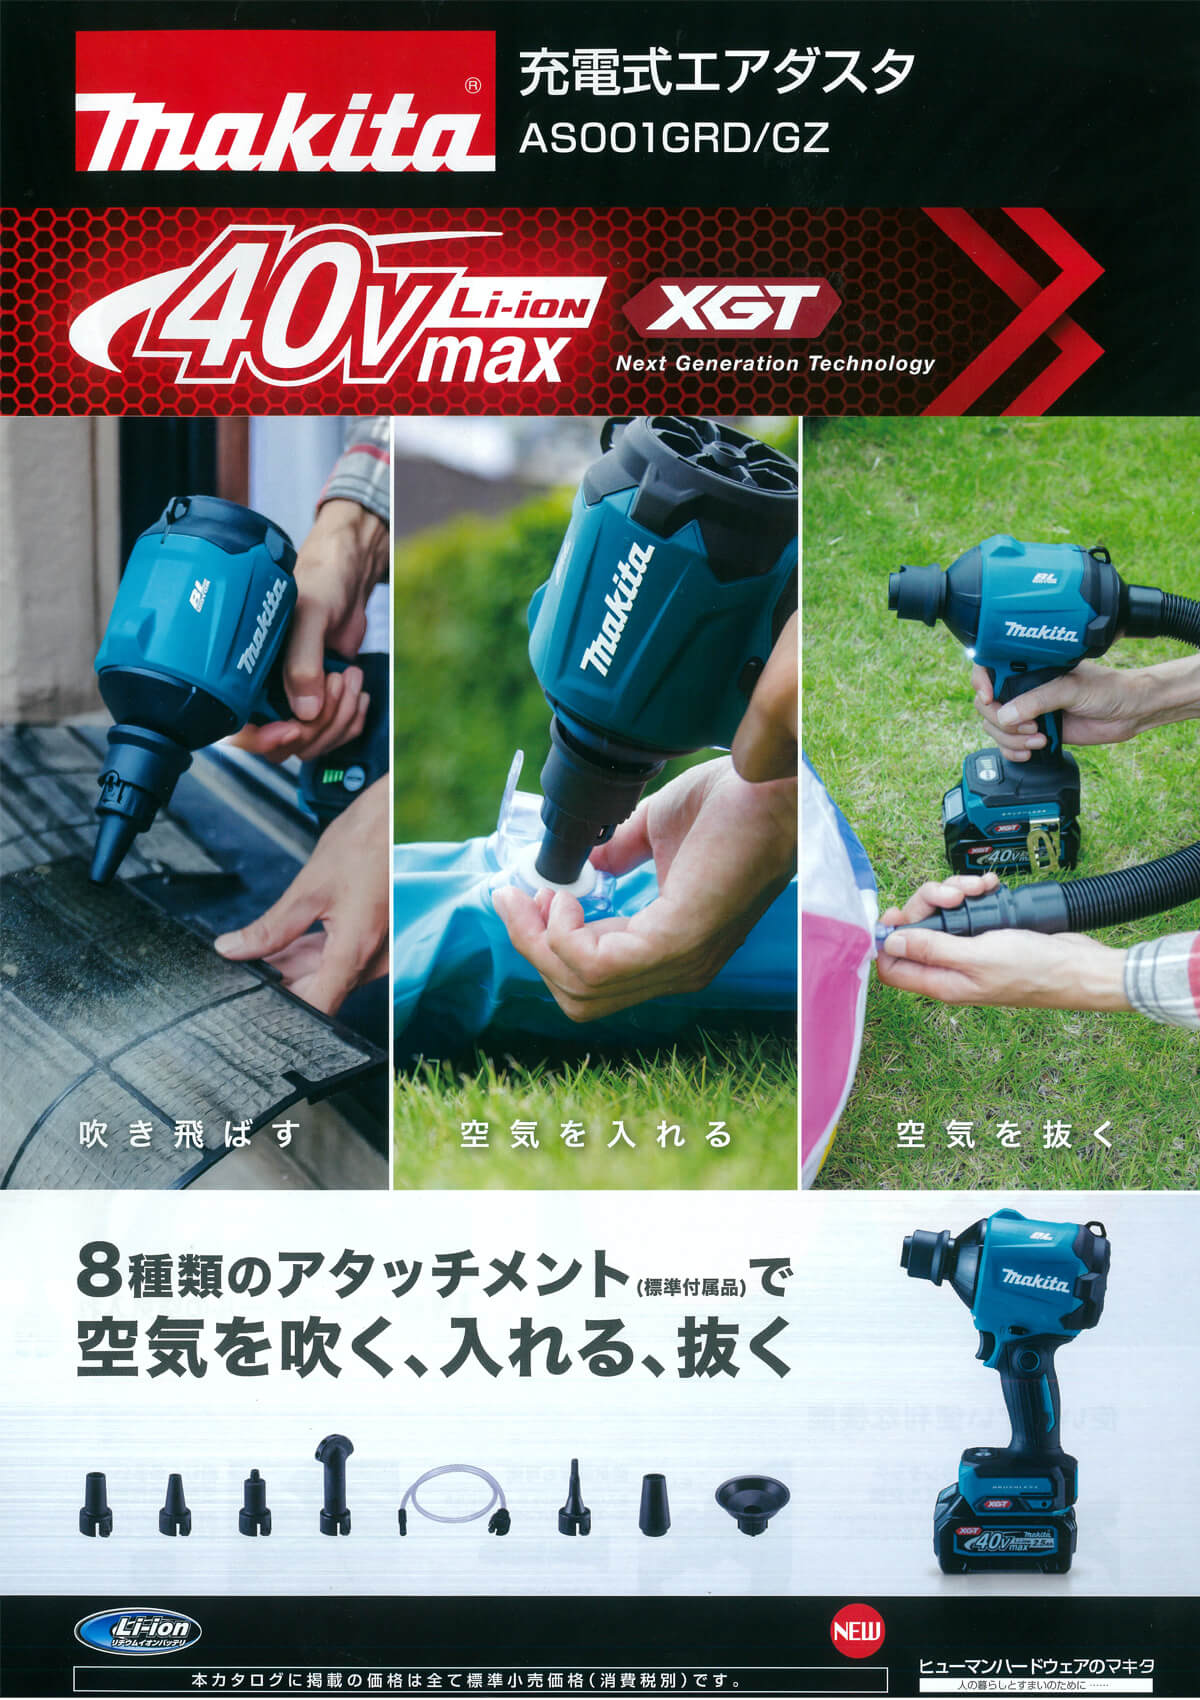 ギフト/プレゼント/ご褒美] Makita 40V 充電式エアダスター AS001G